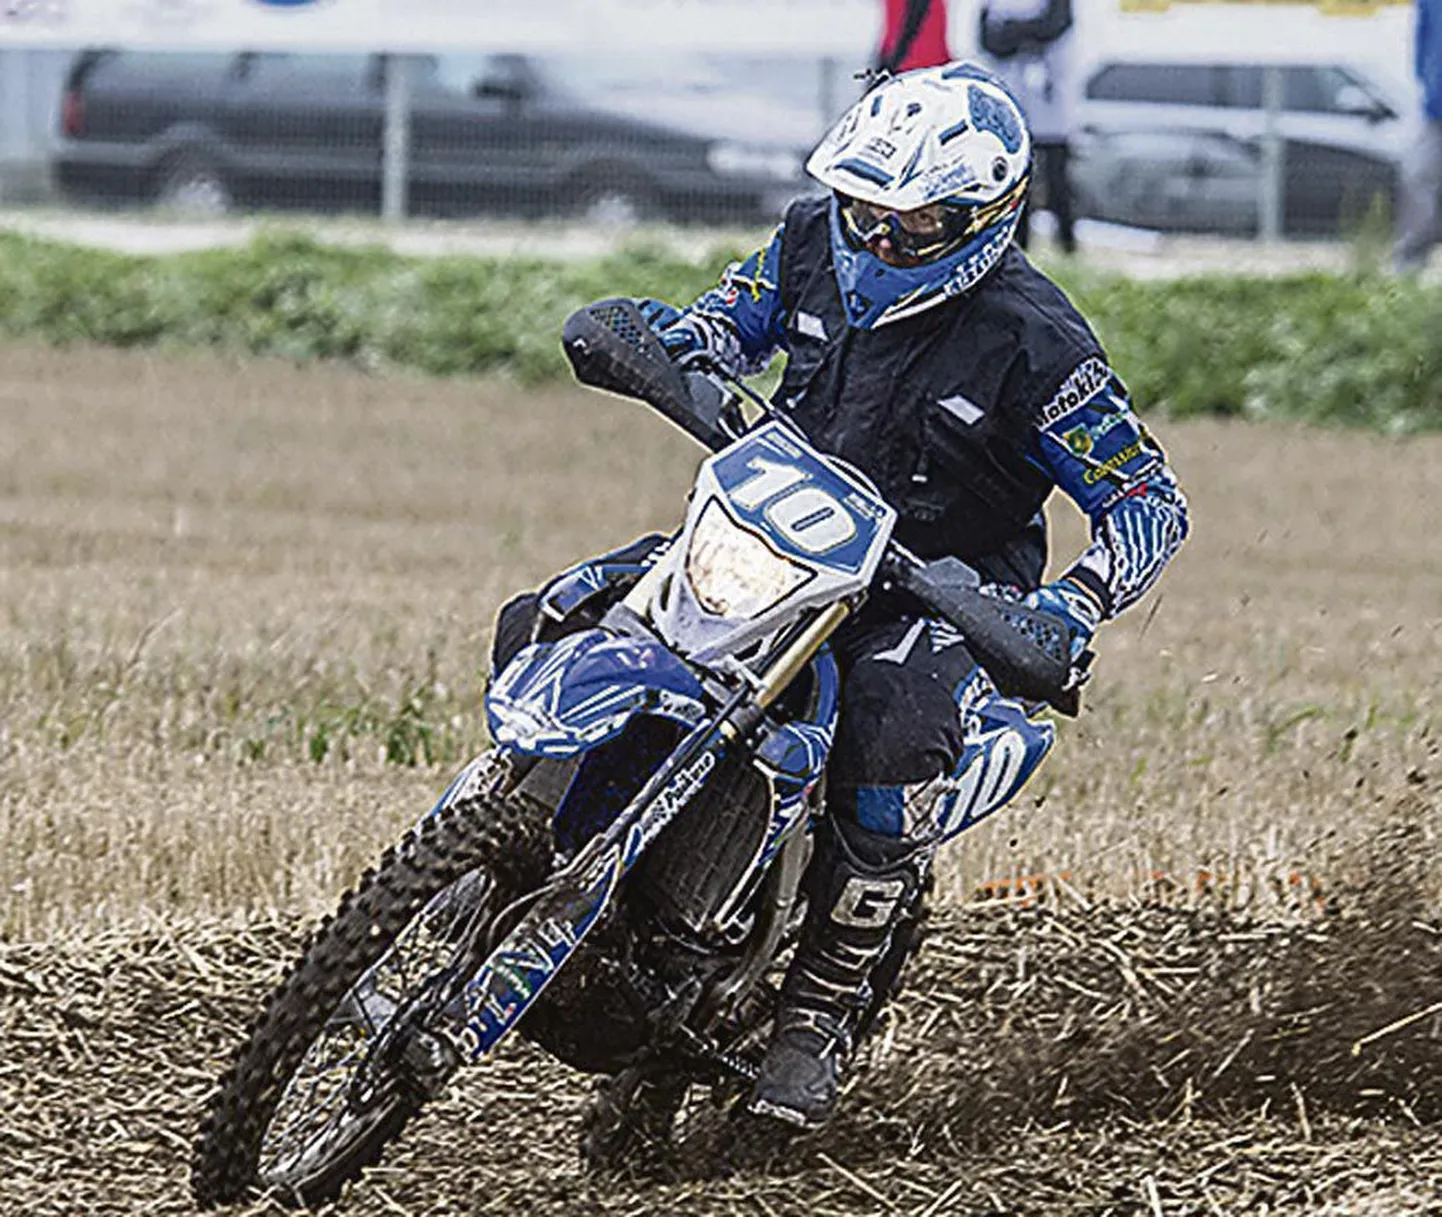 Paikuse motoklubi eestvedaja Toivo Nikopensius võitis mitmepäevasõidu Eesti meistrivõistlustel nelja etapi kokkuvõttes veenva ülekaaluga seenioride kuldmedali.